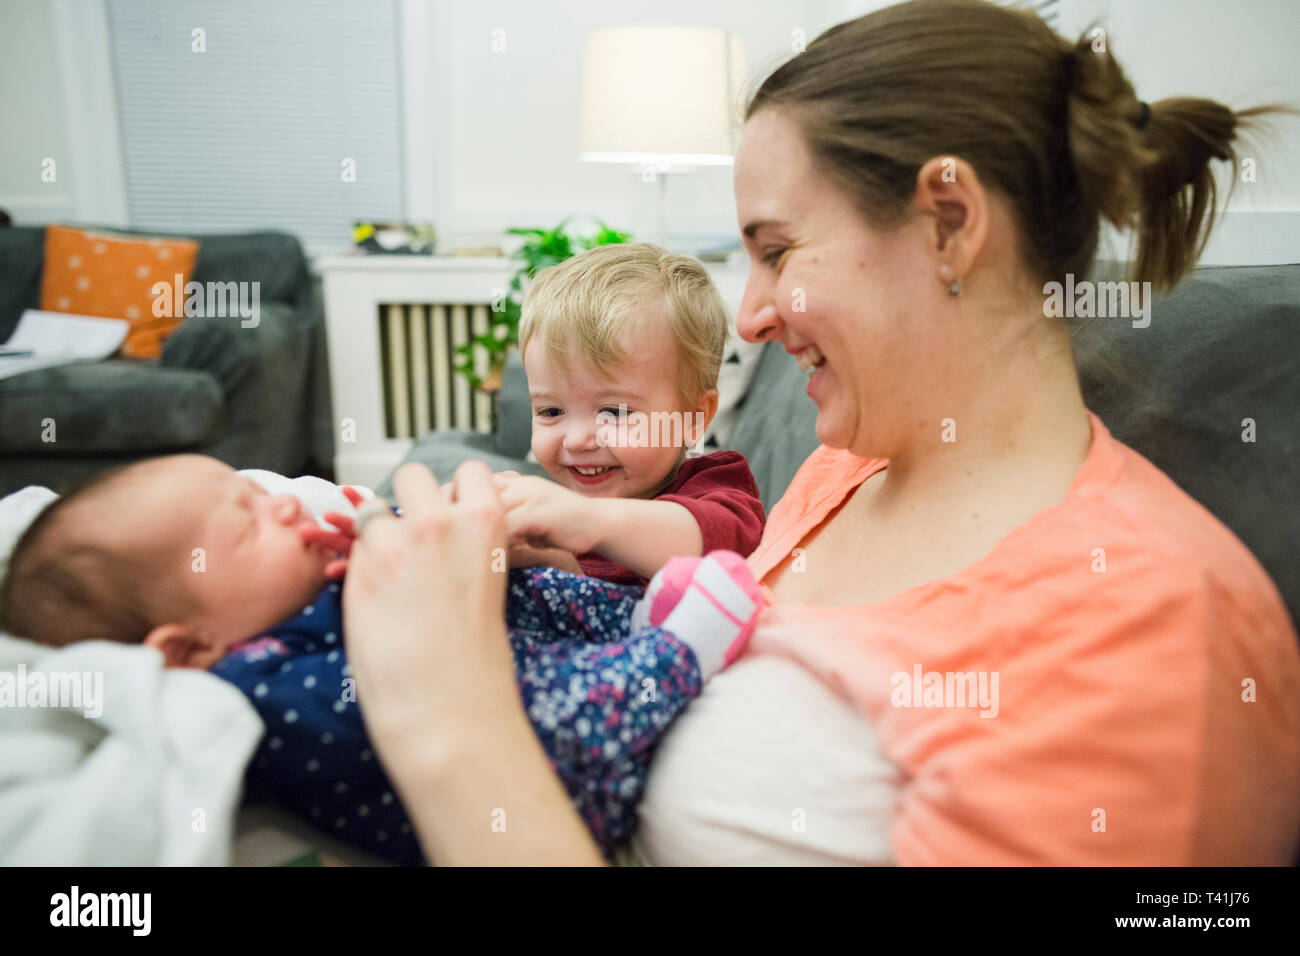 Heureux garçon blond est assis à côté de nouvelle mère et nouveau-né girl at home Banque D'Images